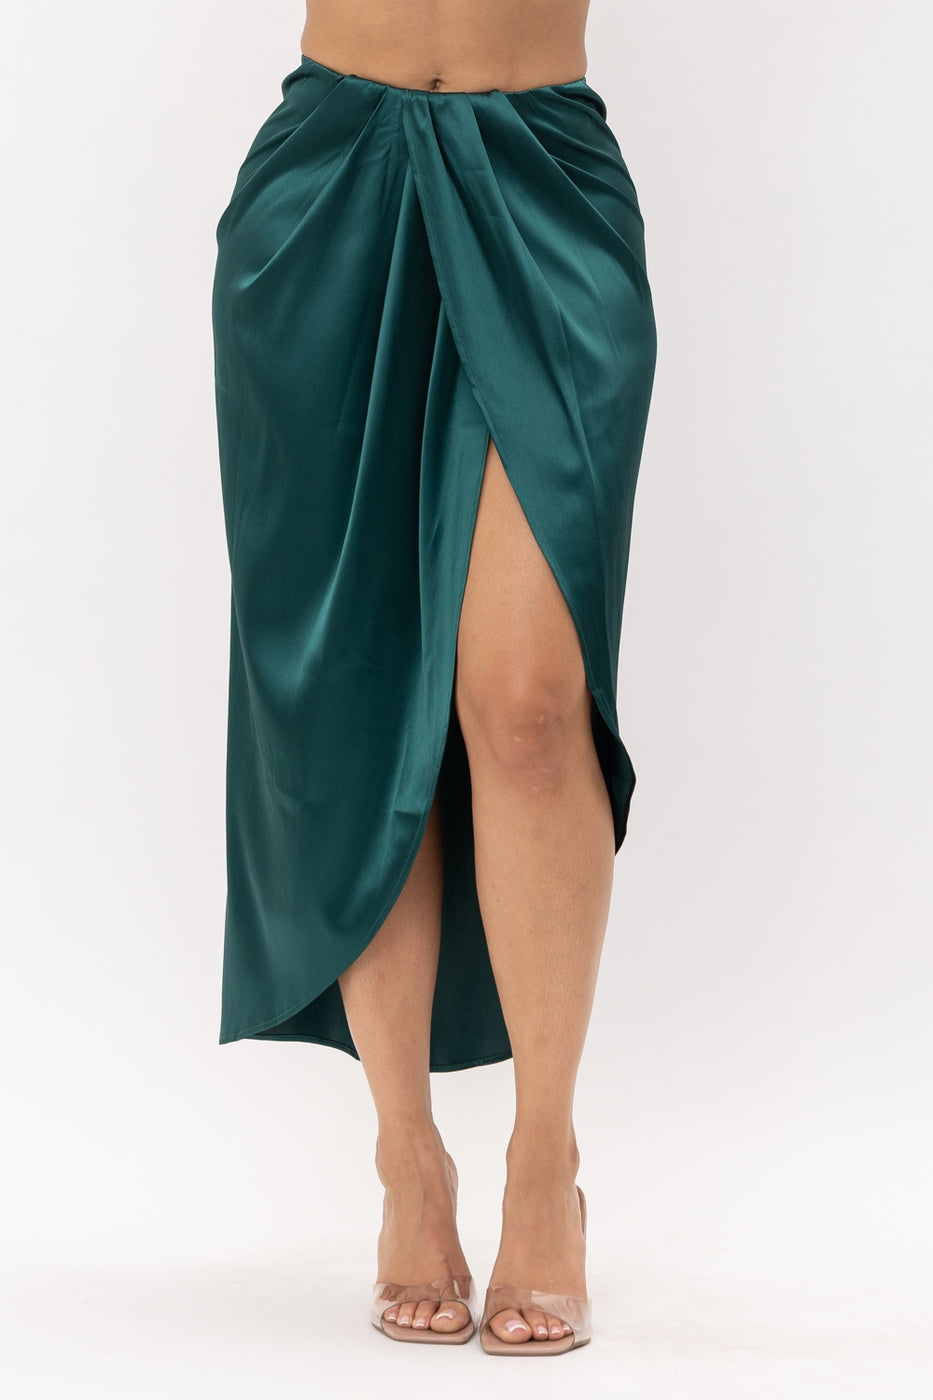 Bottoms, Women's Skirts, Wrap Skirt, Green Skirt, Hunter Green, Satin Skirt